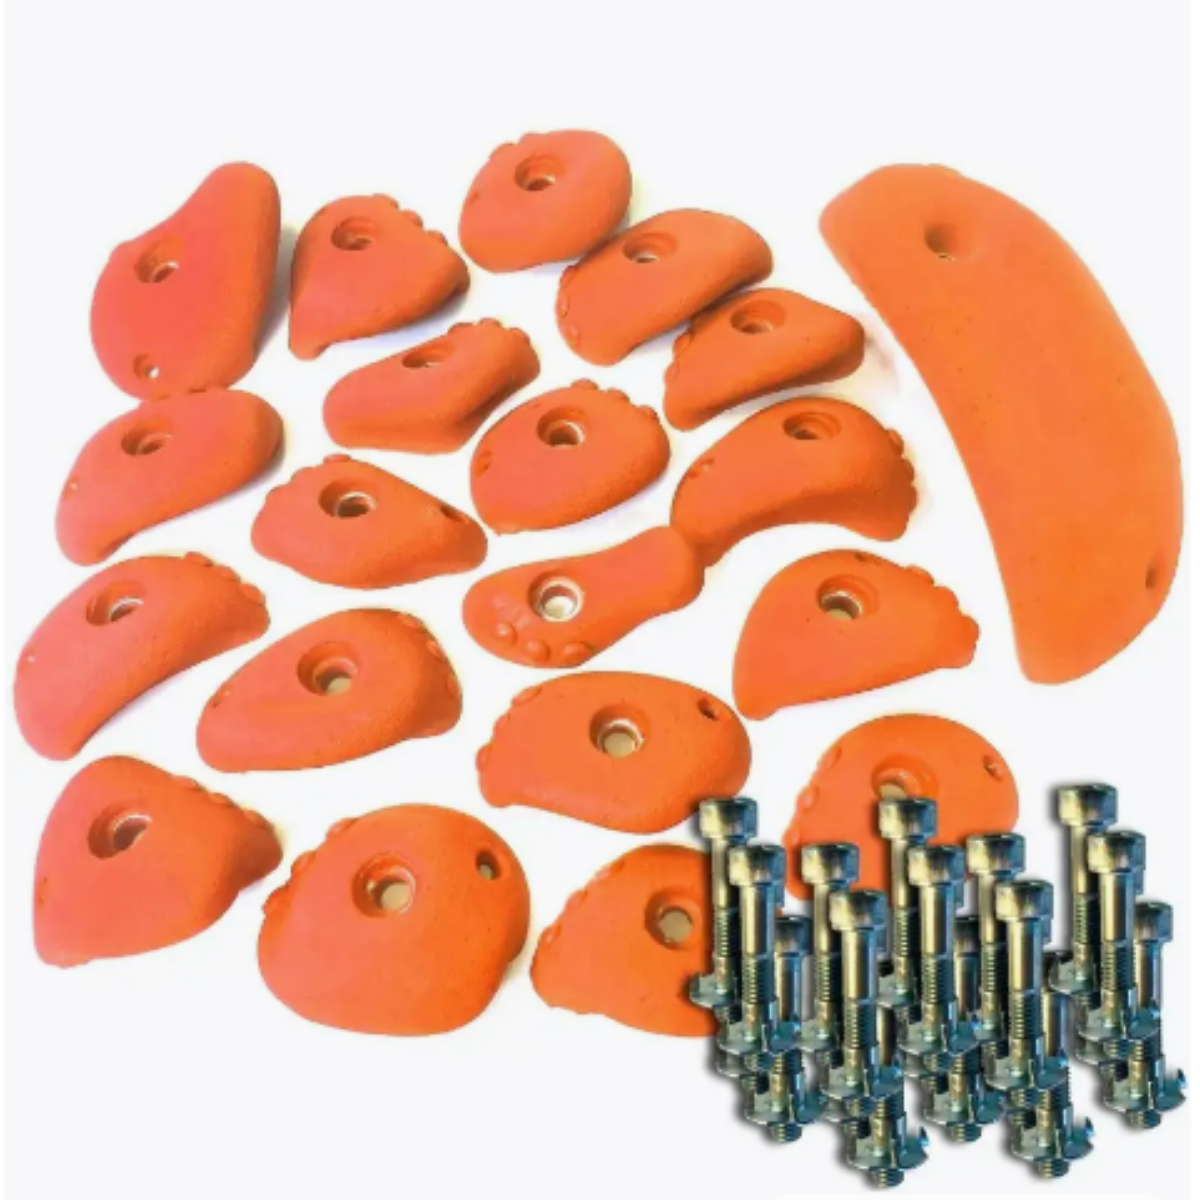 Зацепы для скалодрома Скалодромы Жужа сет Dot оранжевые 20 шт с крепежом